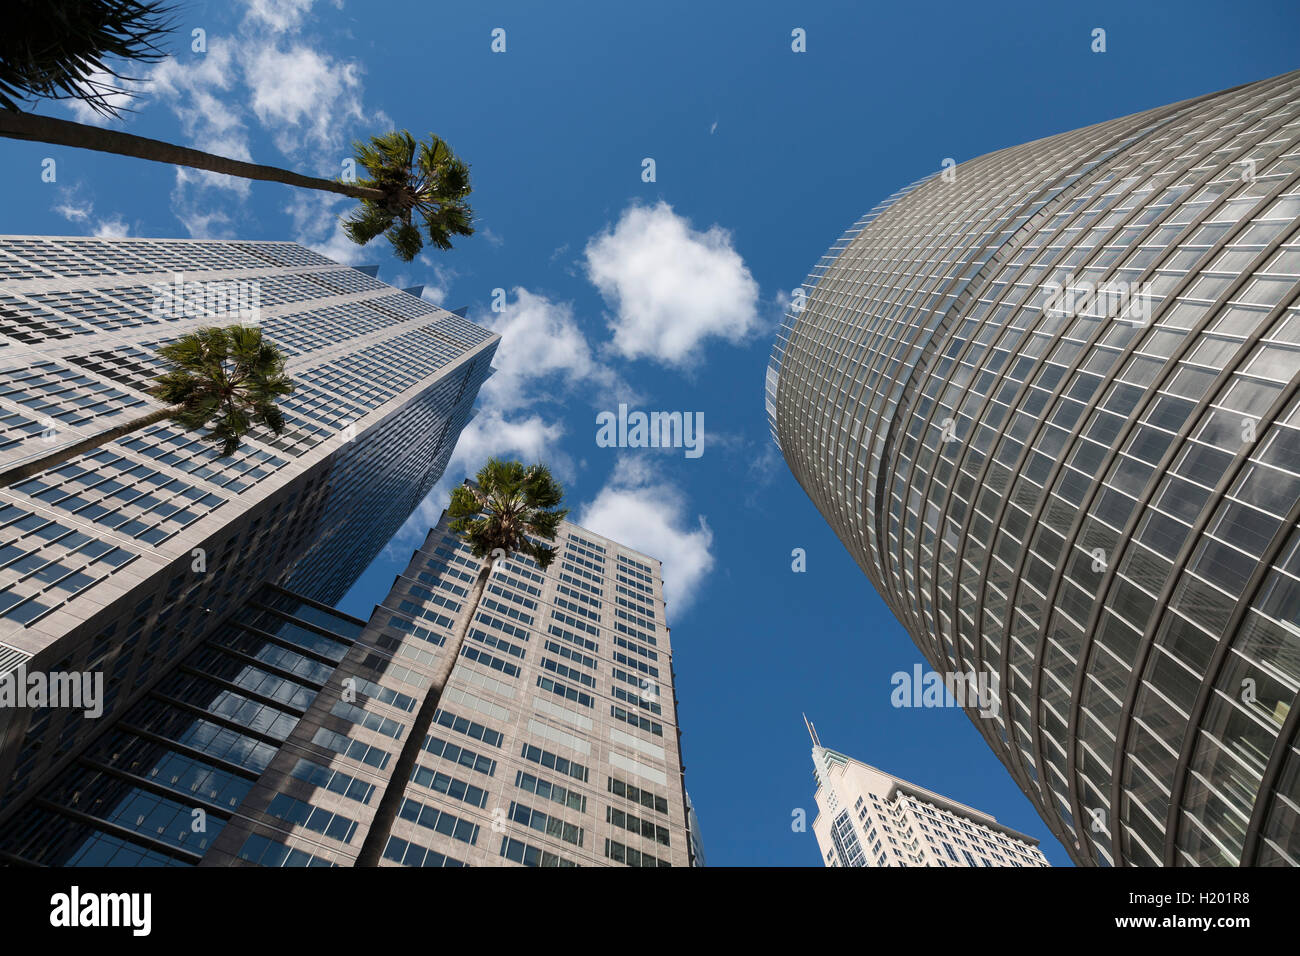 Immeubles de bureaux modernes dont un Bligh Street s'élevant au-dessus de palmiers CBD de Sydney Australie Banque D'Images